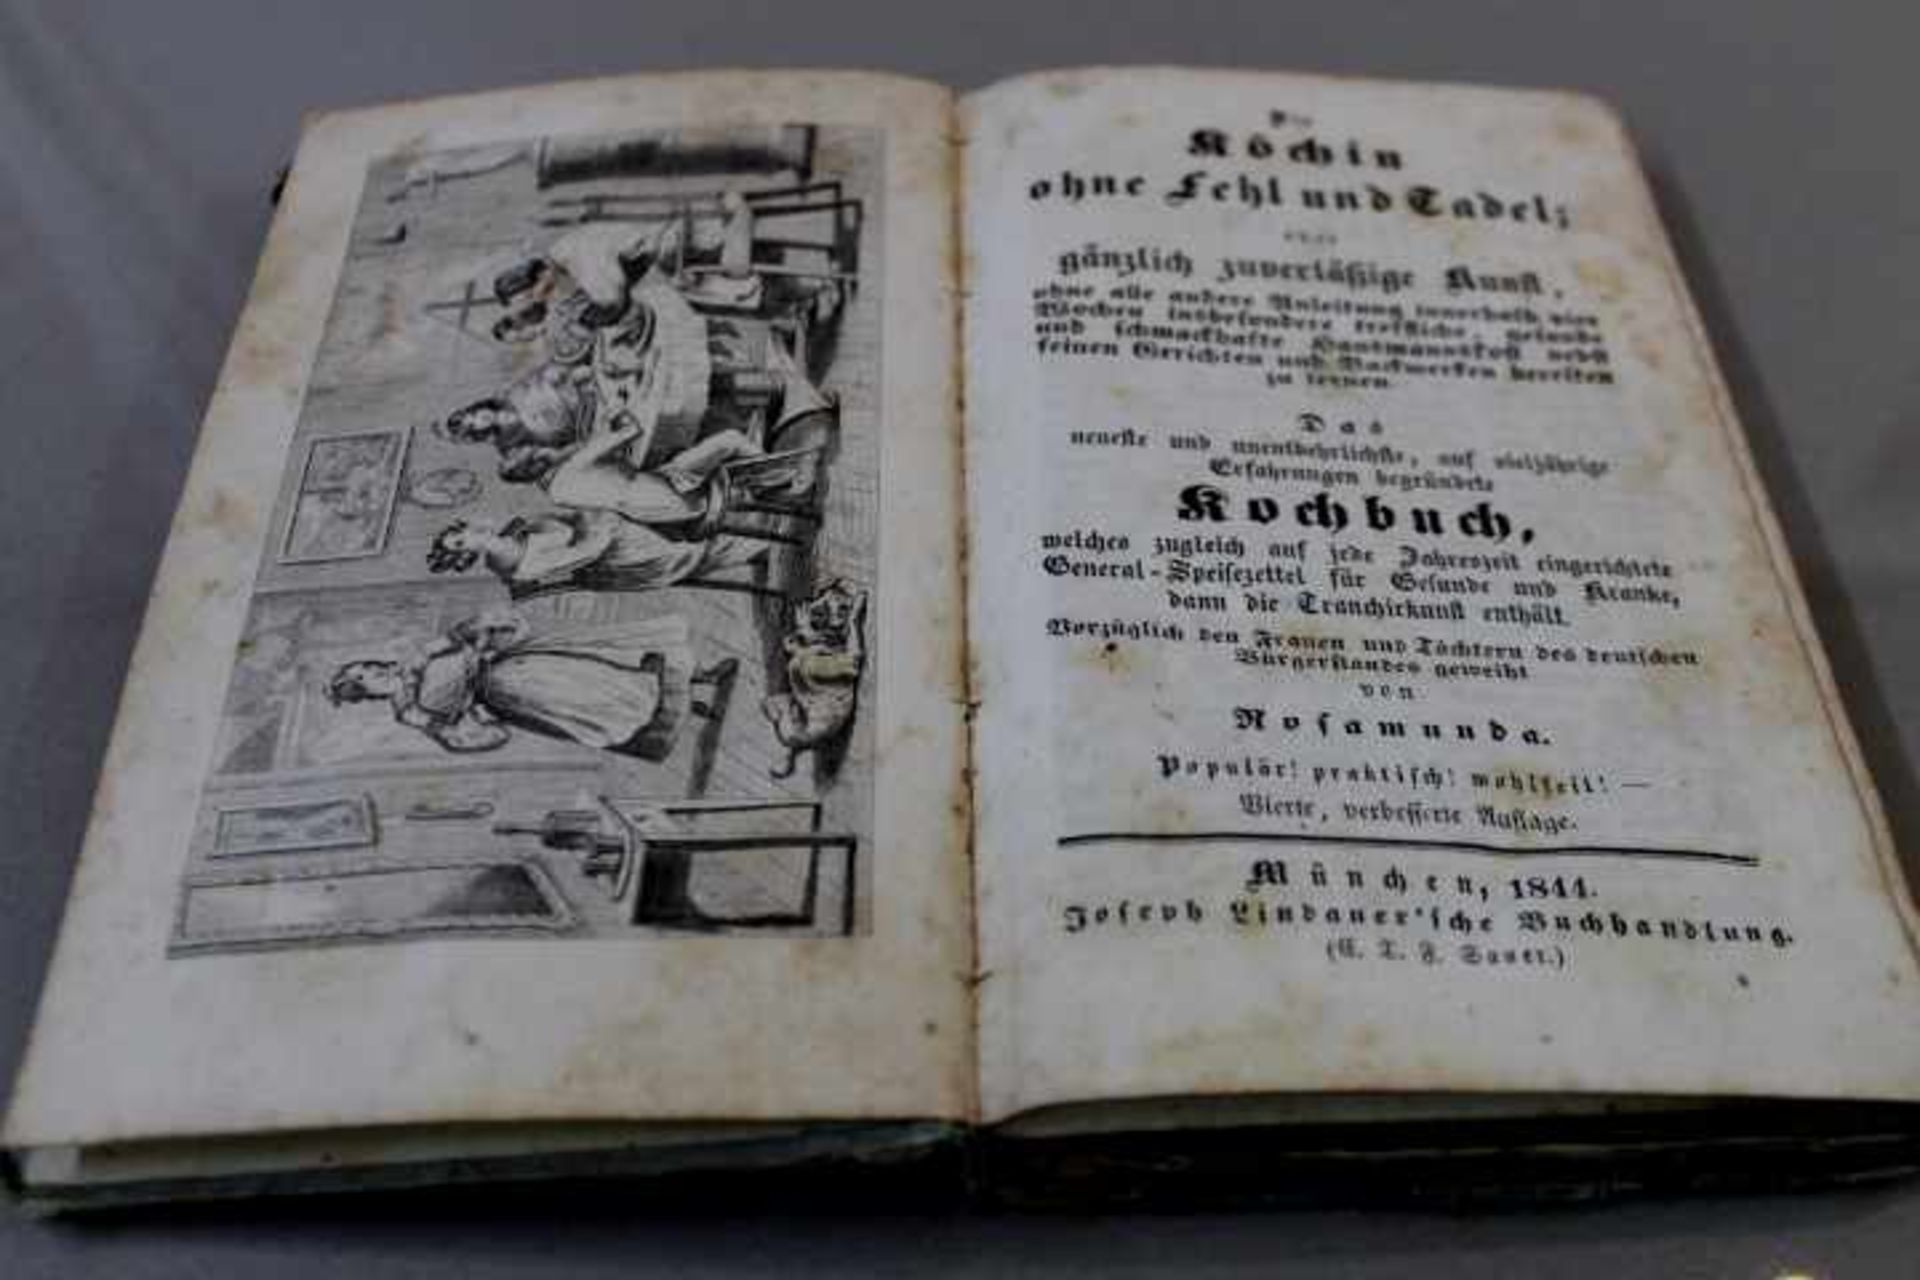 Kochbuch die Köchin ohne Fehlund Tadel von RosamundaMünchen 1844Joseph Lindauersche - Bild 2 aus 2